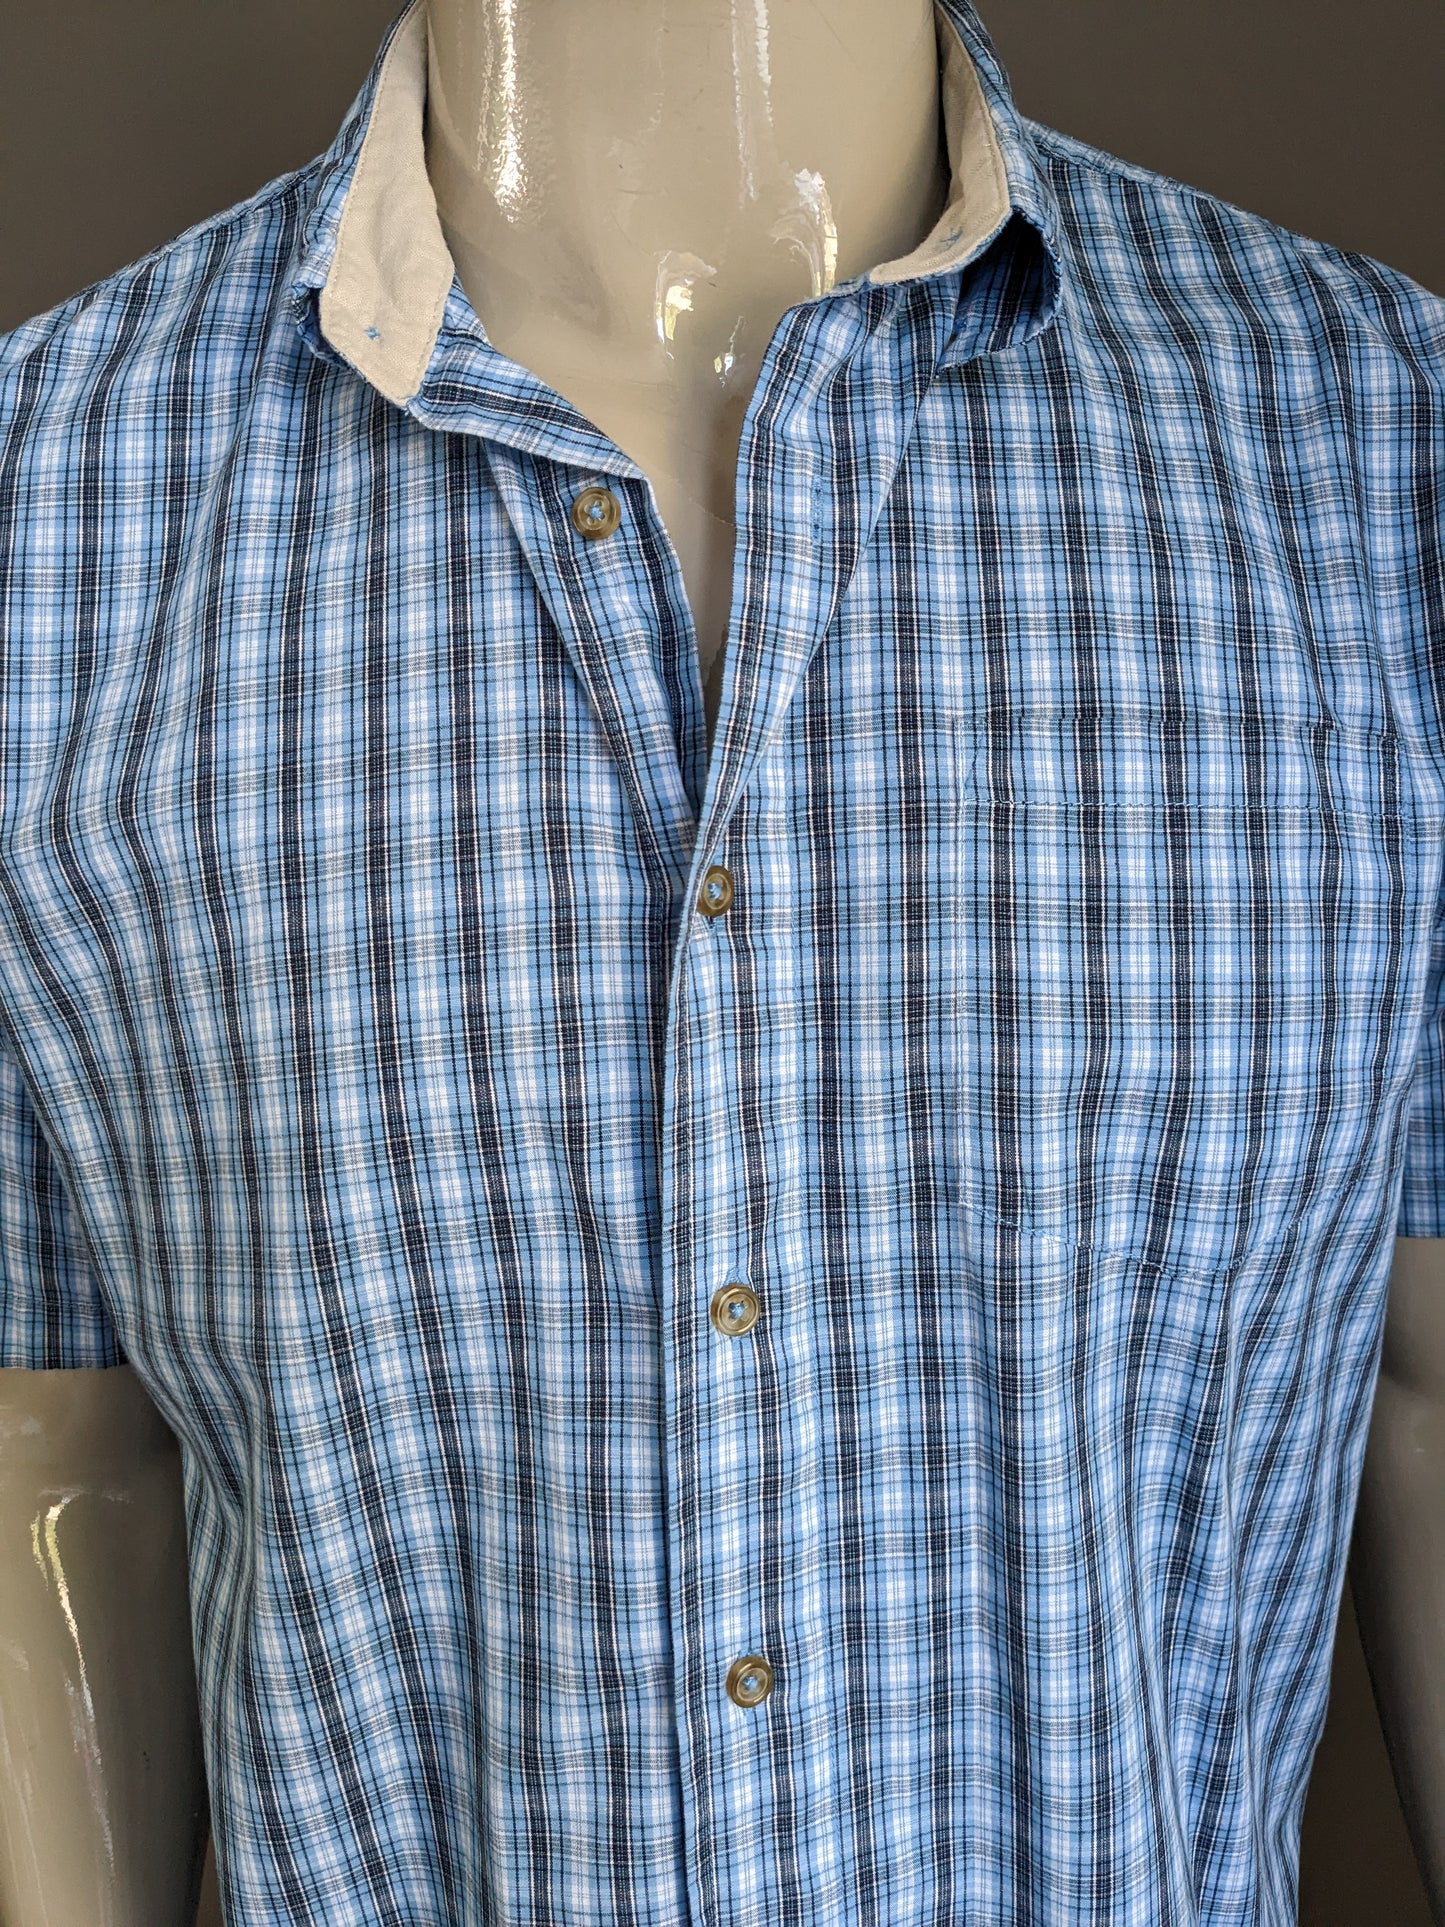 Wrangler shirt short sleeve. Blue white checkered. Size M / L.